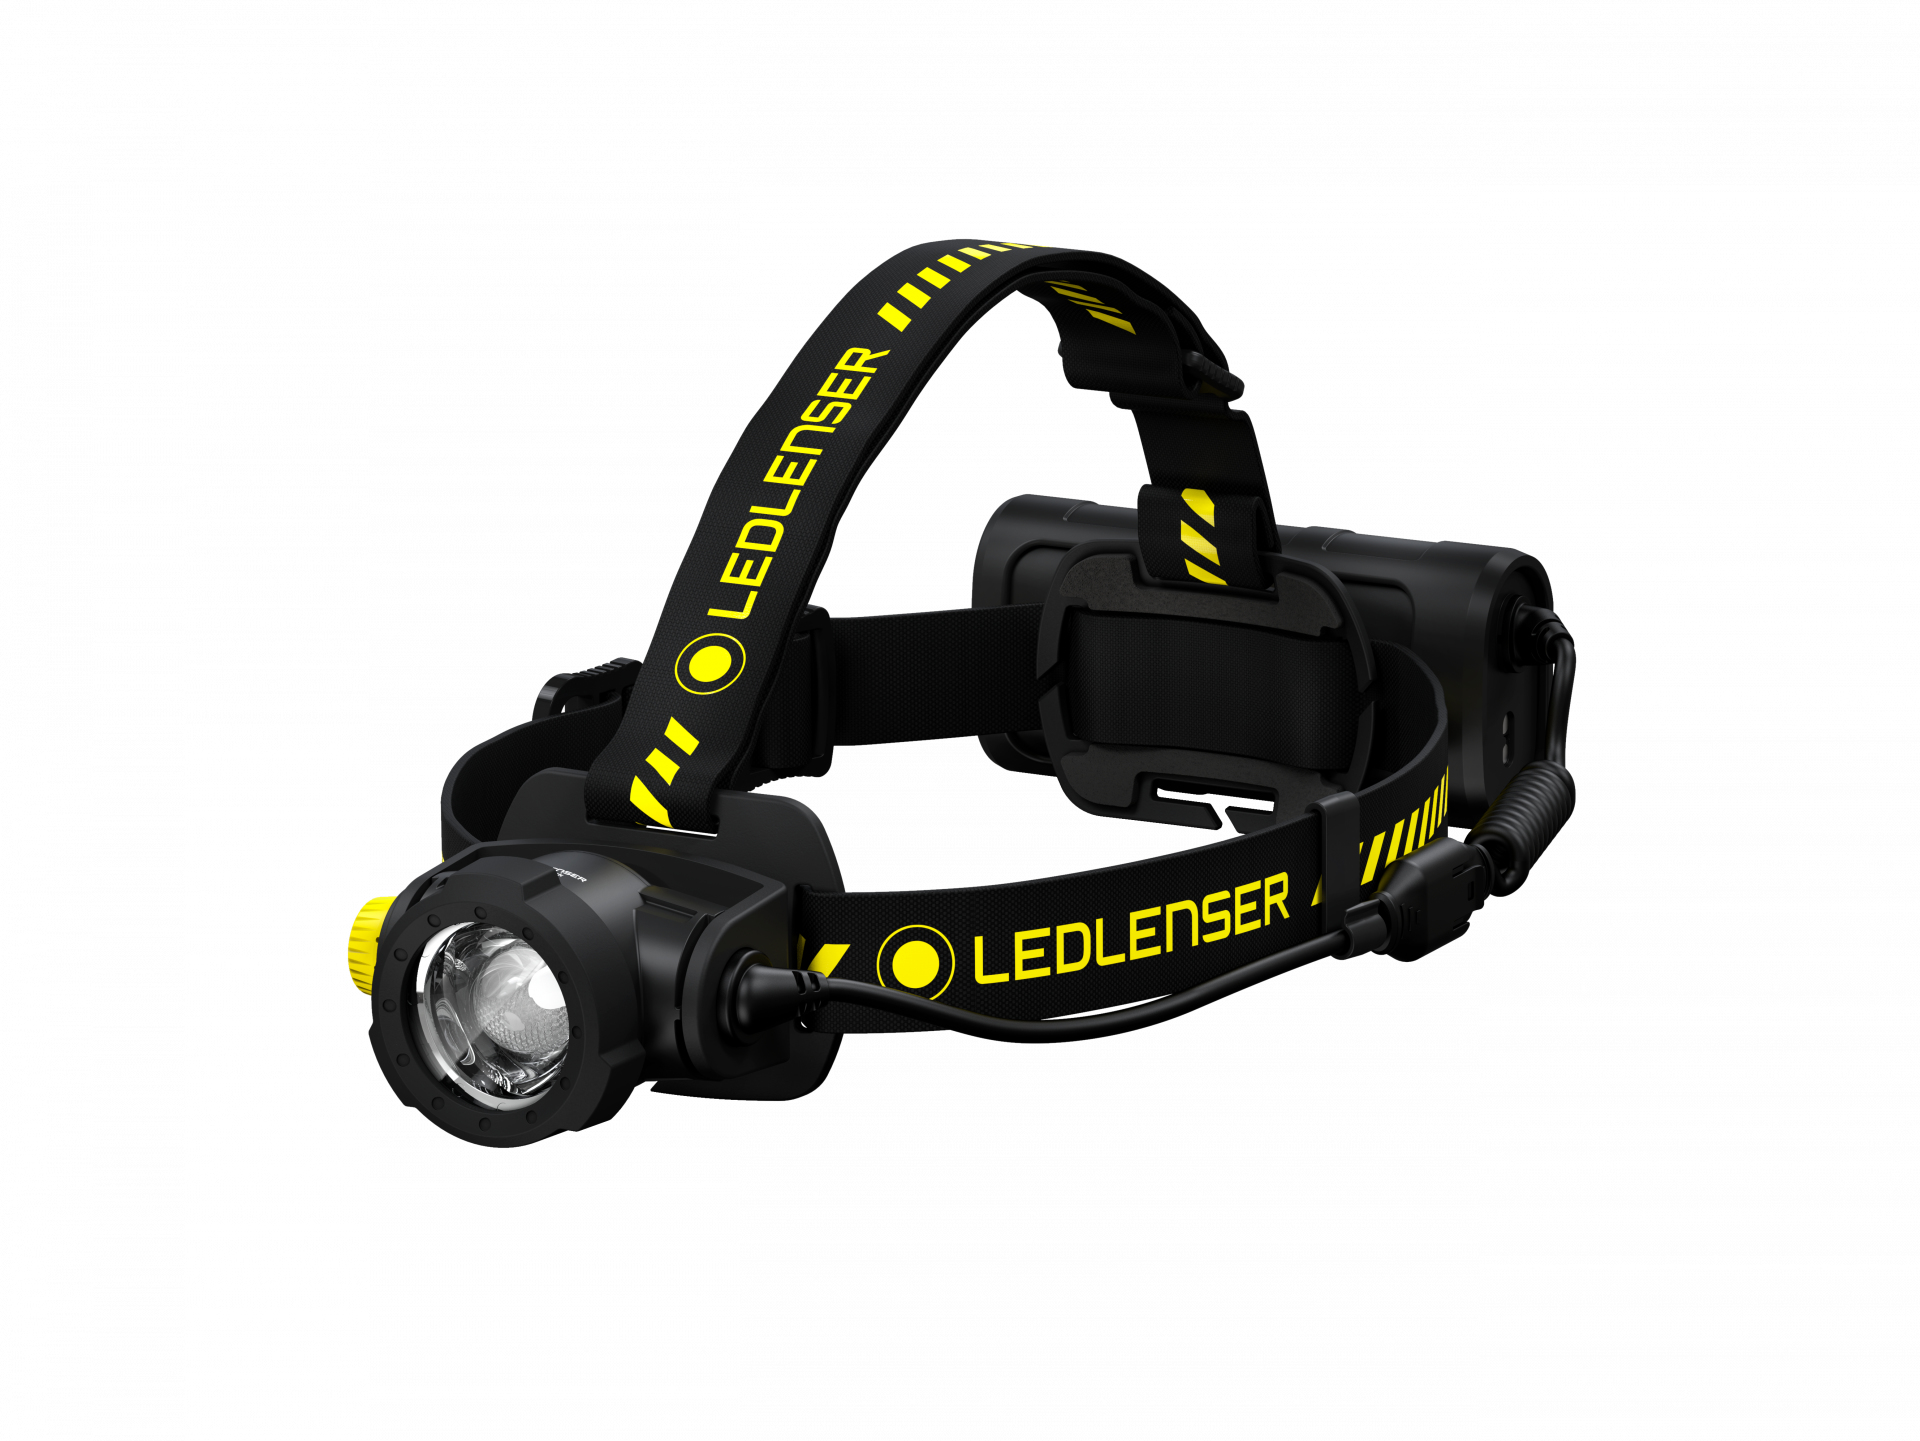 LED Lenser H15R Work - Stirnband-Taschenlampe - Schwarz - Gelb - IP67 - LED - 1 Lampen - 2500 lm